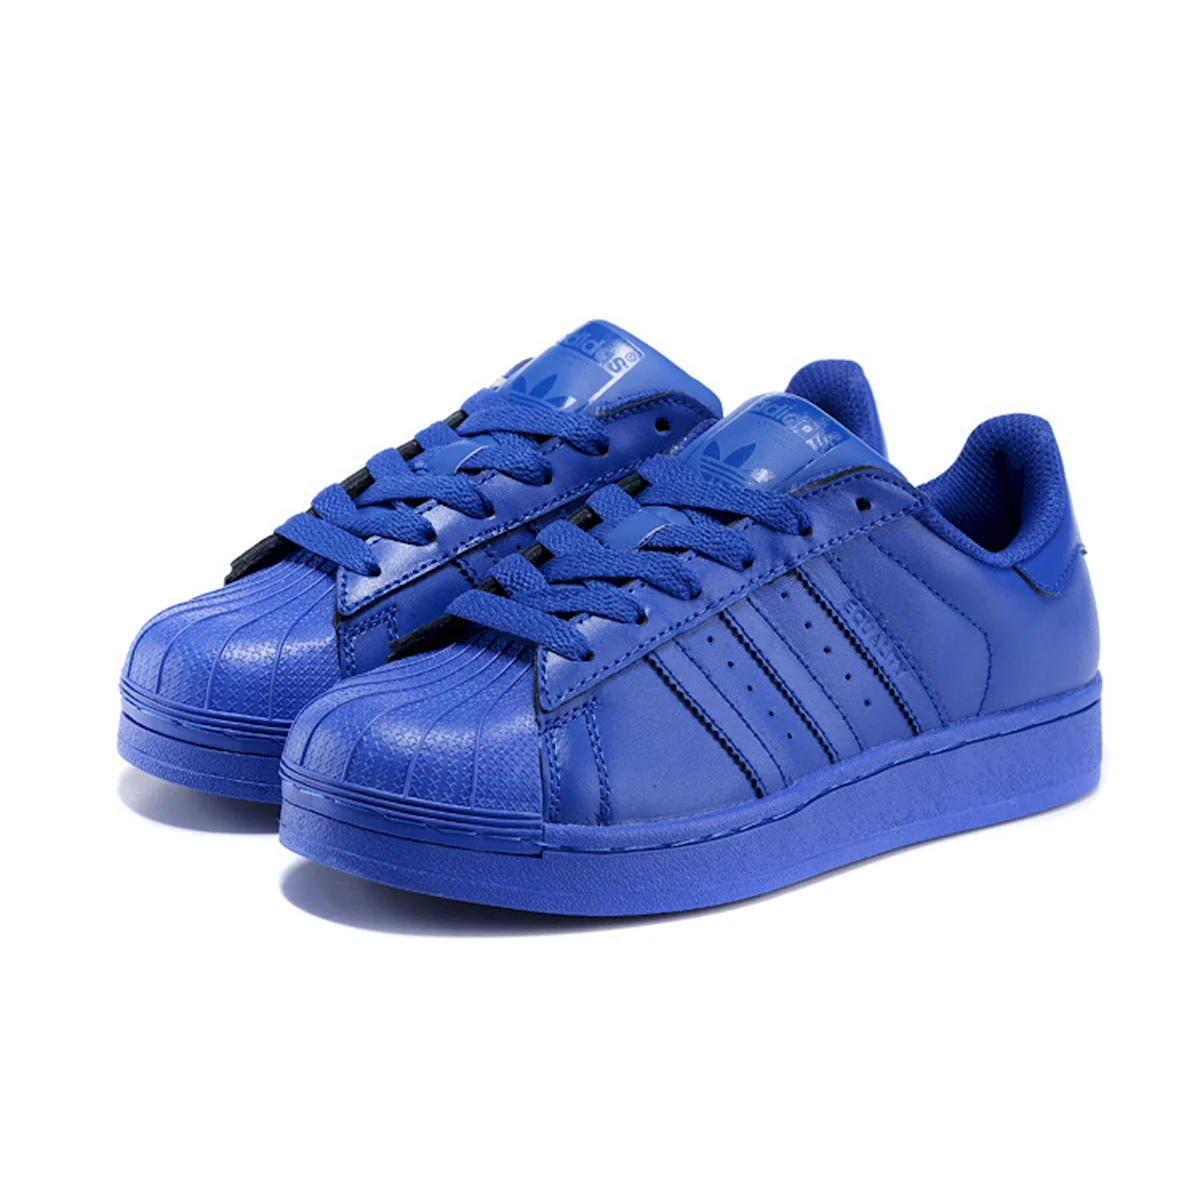 Adidas Superstar синие